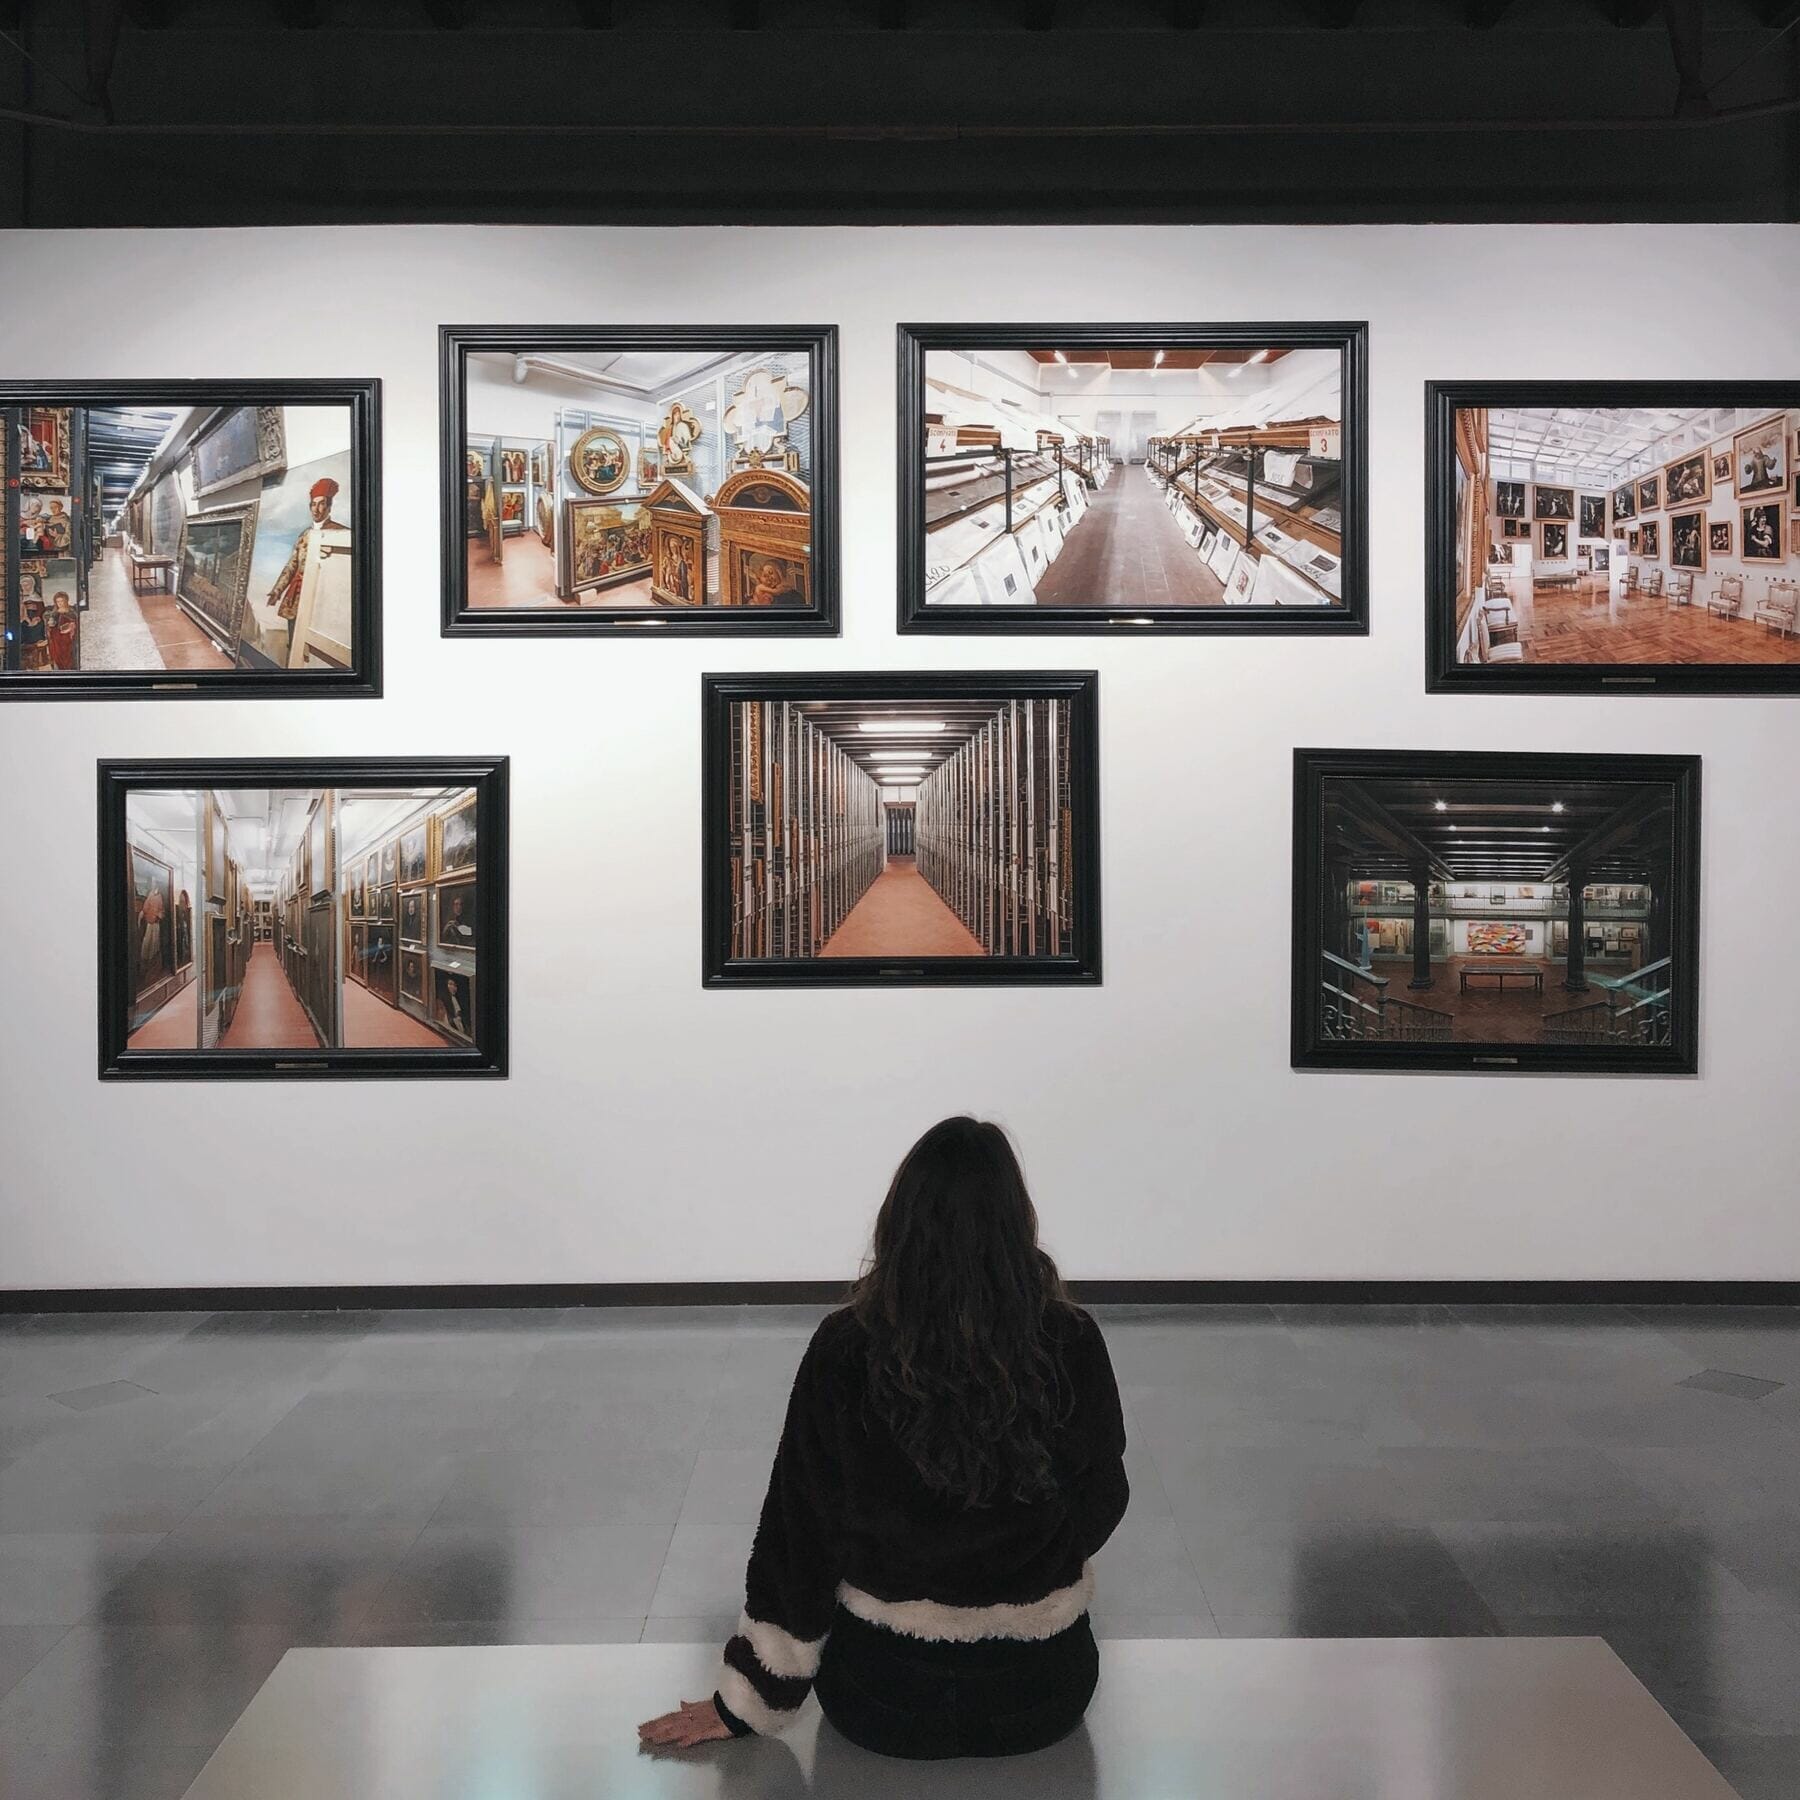 Mujer sentada de espaldas observando siete cuadros en una pared